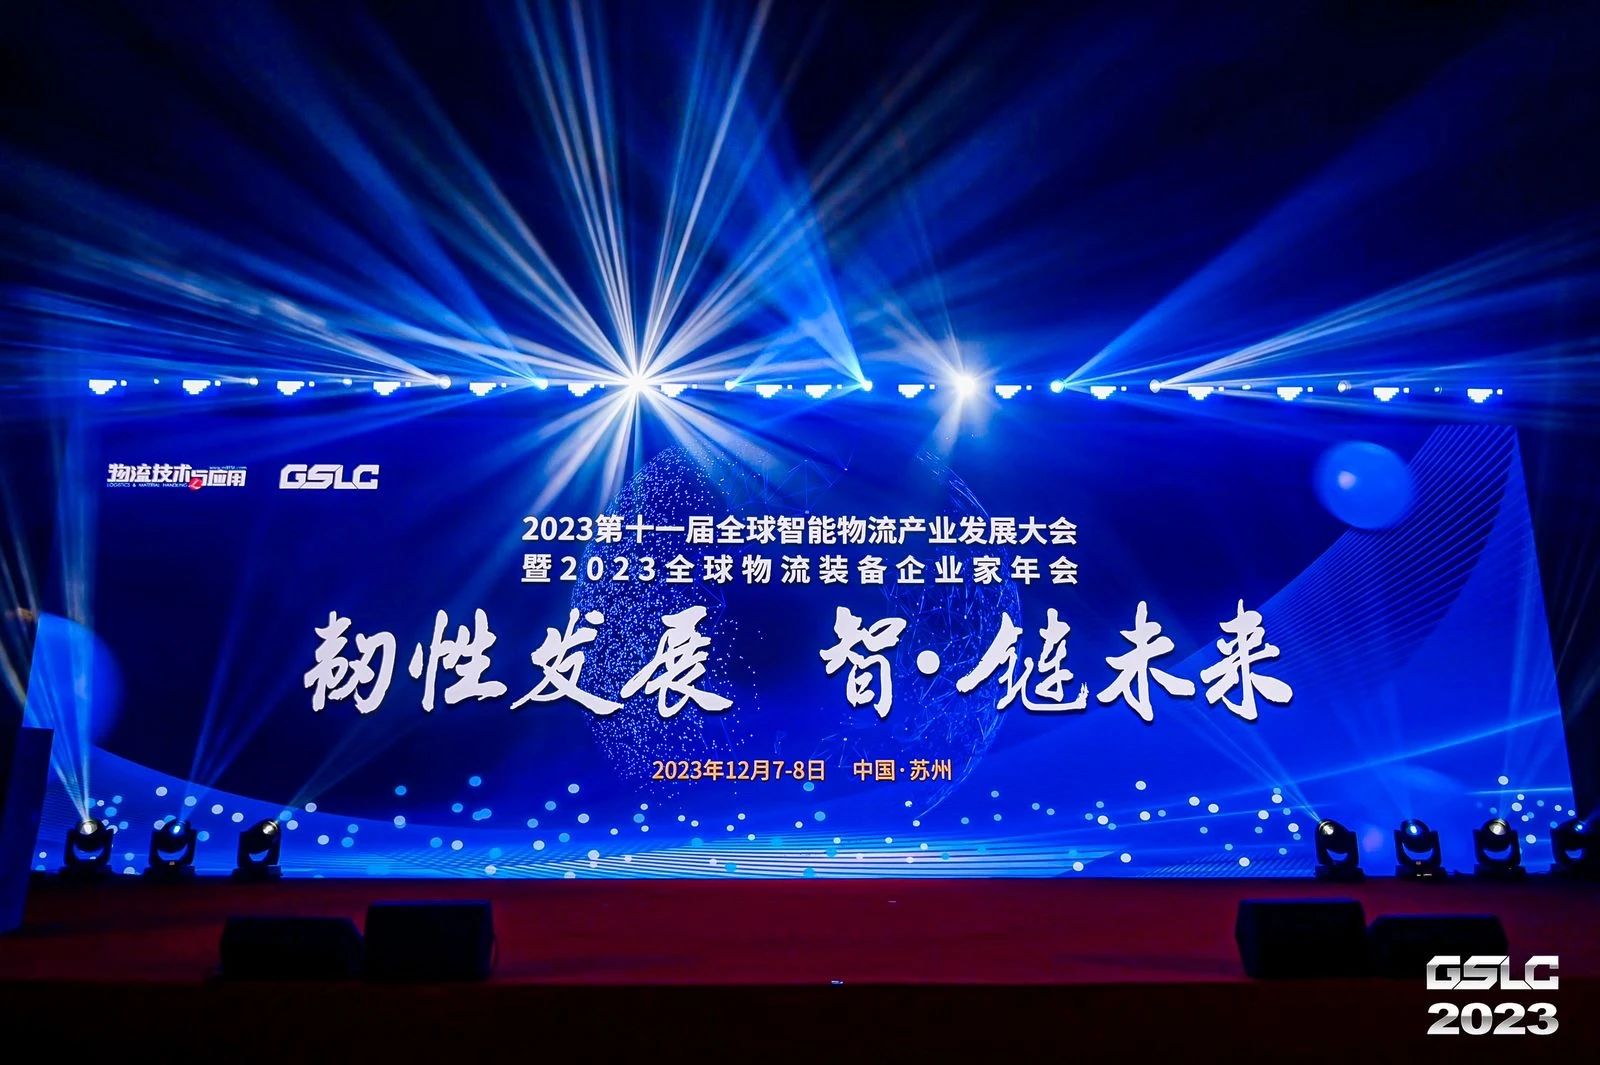 喜讯 | 迦南飞奇荣获“2023年度智能物流产业技术创新奖”奖项